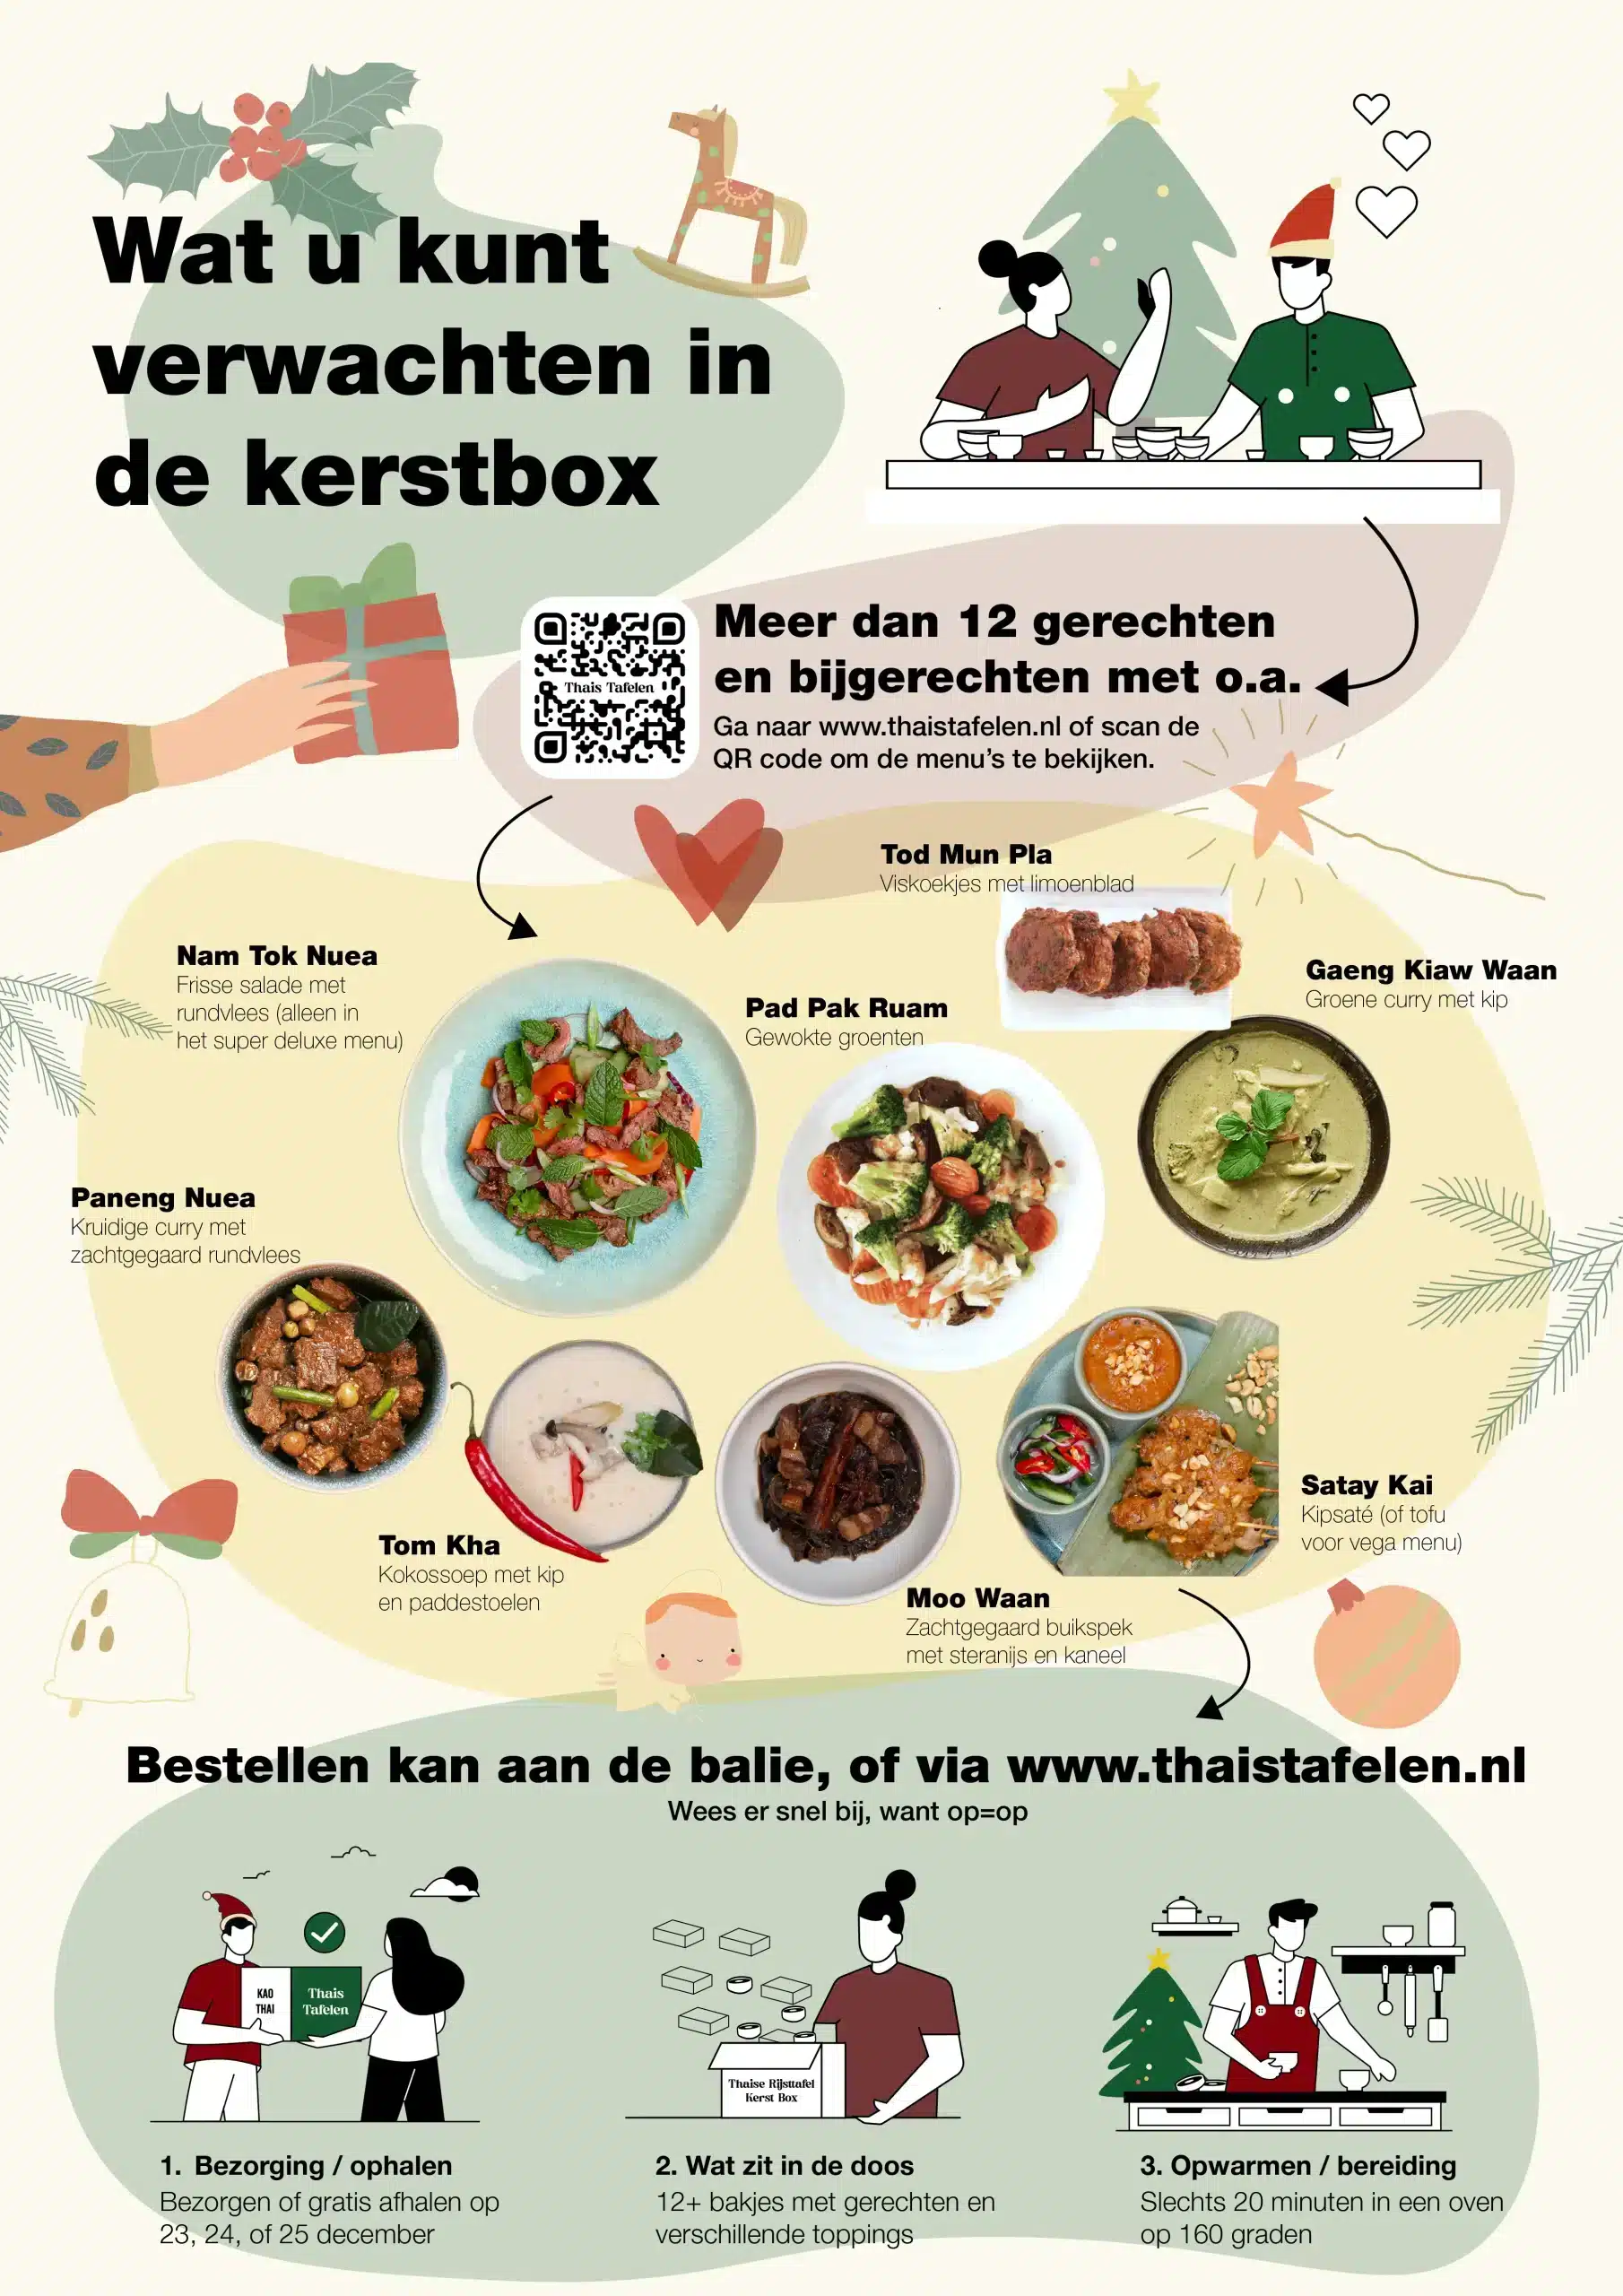 Infographic met wat u kunt verwachten in de Thaise Rijsttafel Kerstbox, van gerechten tot aan bereiding